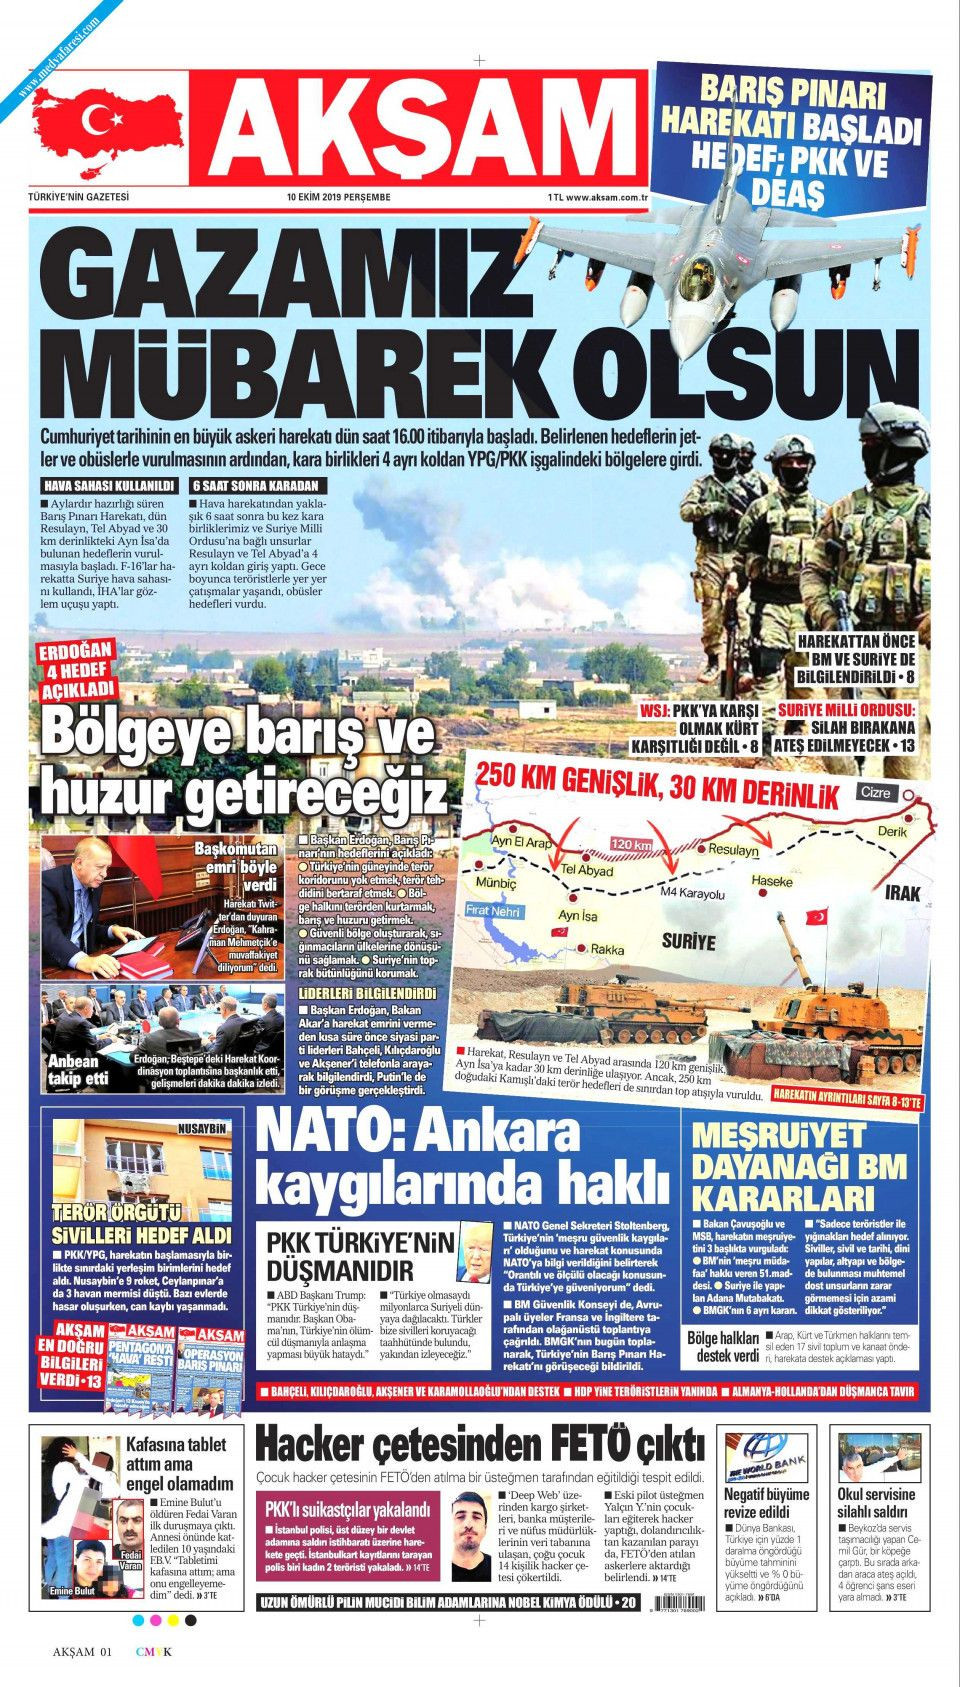 Barış Pınarı Harekatı'nı gazeteler nasıl gördü? - Sayfa 3